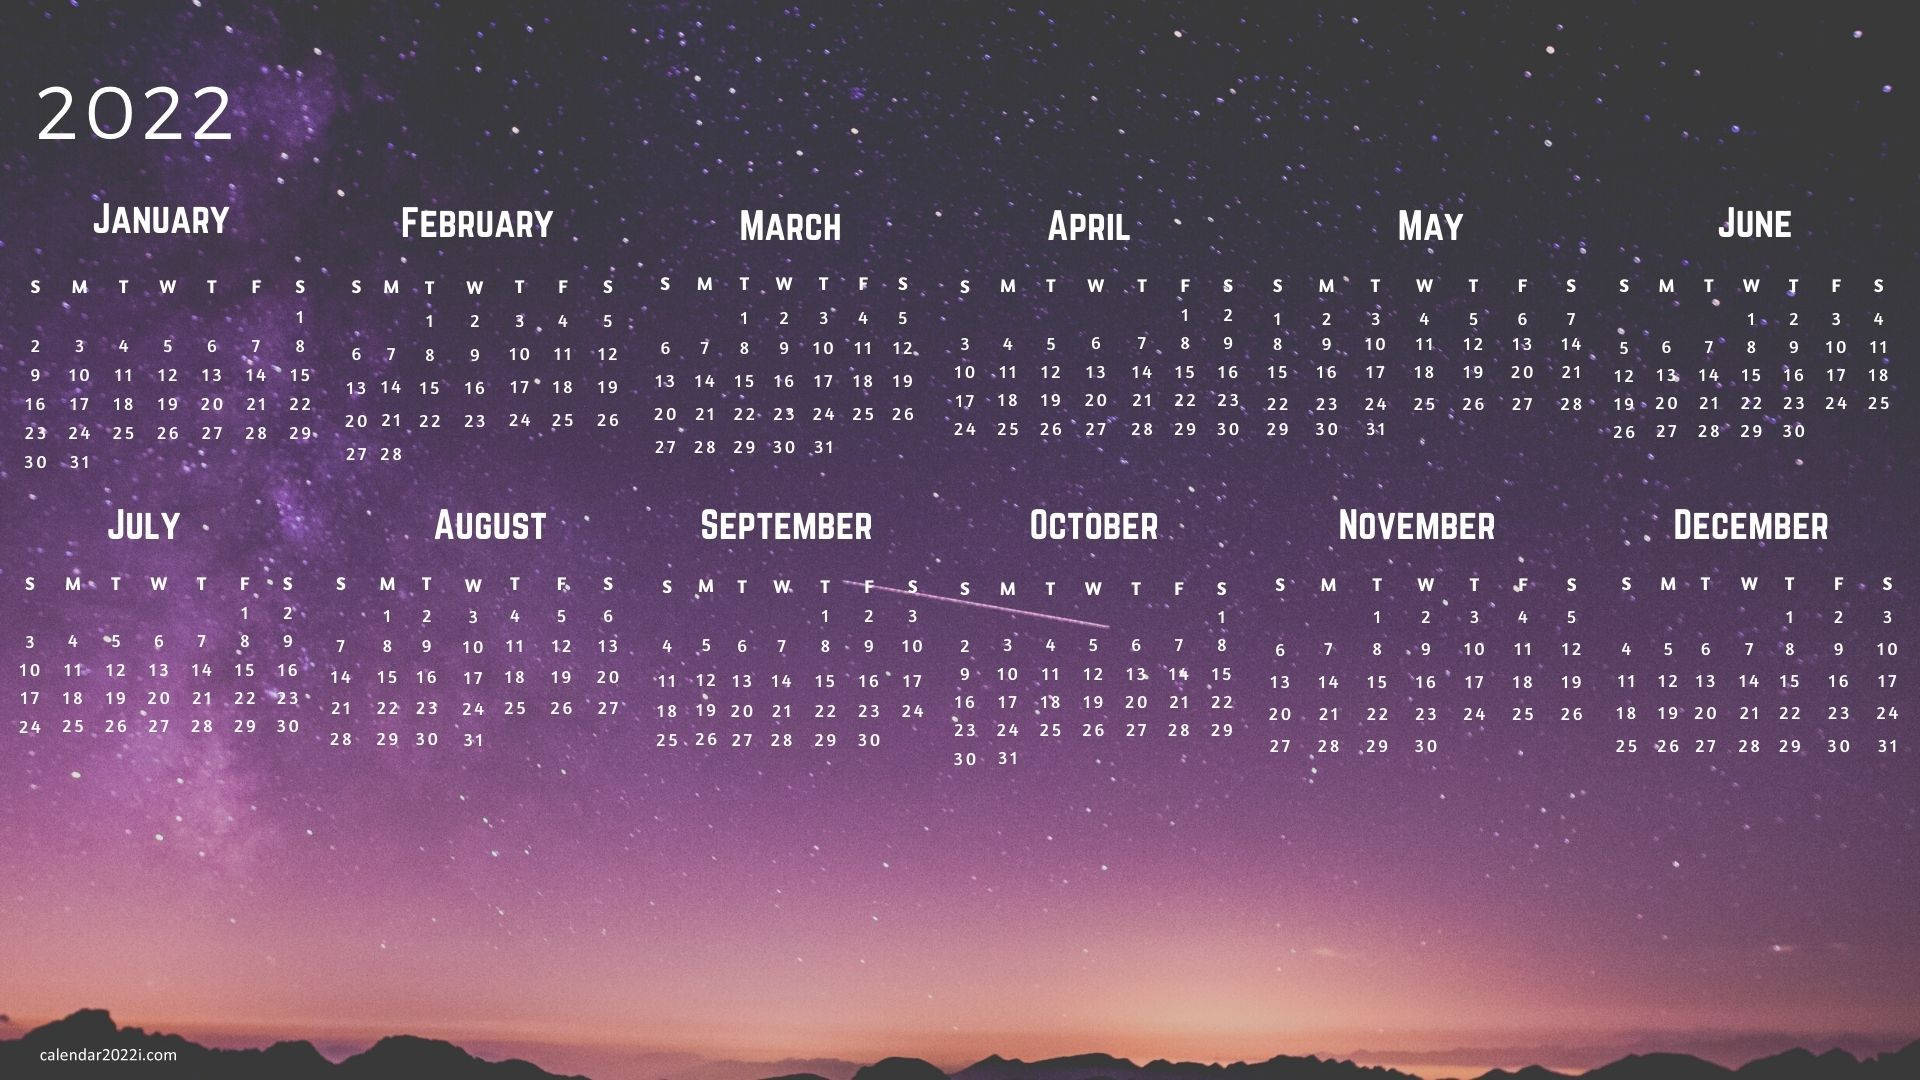 Starry 2022 Calendar Wallpaper